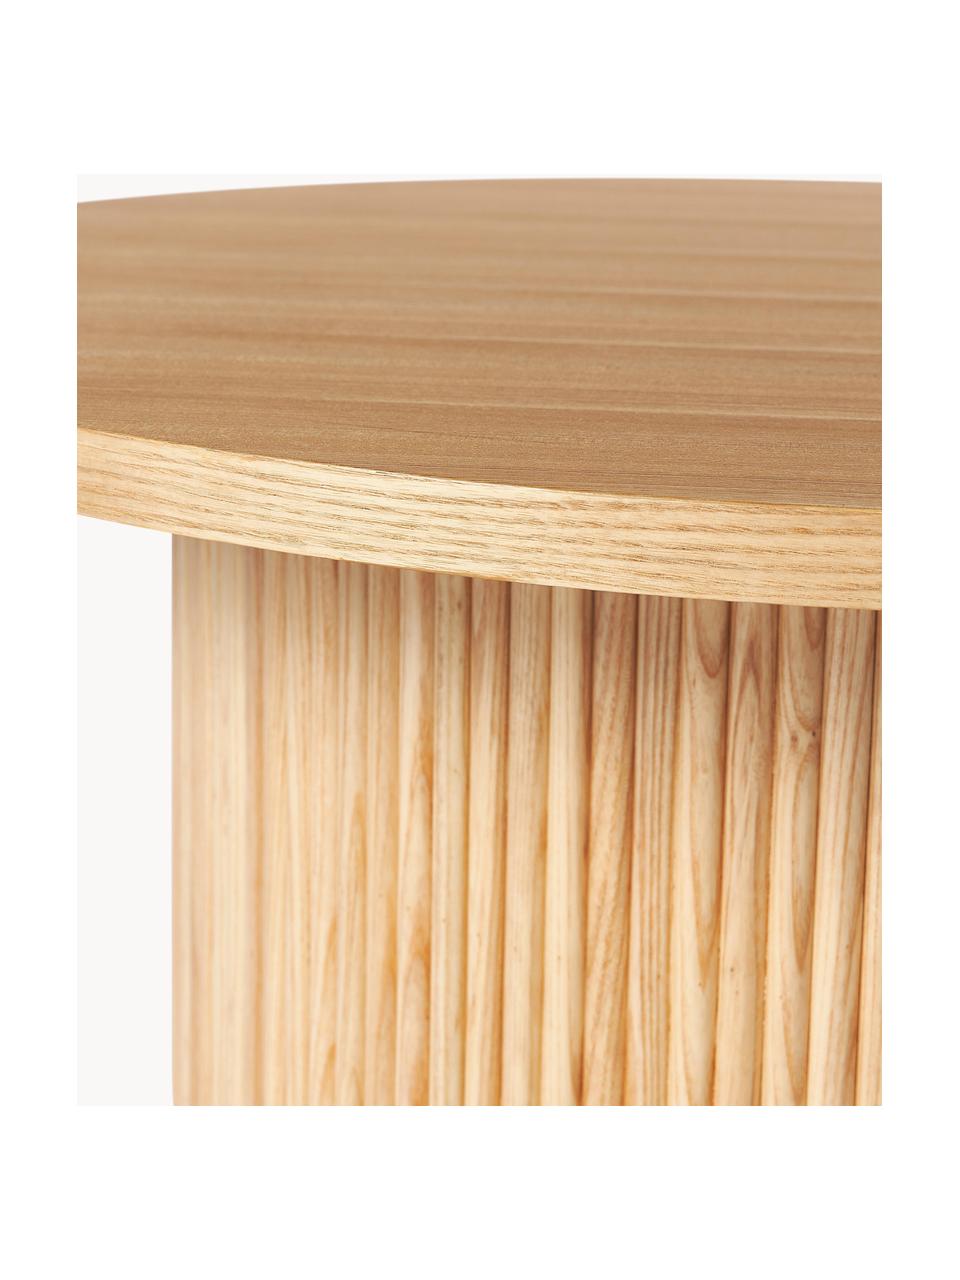 Kulatý dřevěný konferenční stolek Nele, Dřevovláknitá deska střední hustoty (MDF) s jasanovou dýhou

Tento produkt je vyroben z udržitelných zdrojů dřeva s certifikací FSC®., Světlé jasanové dřevo, Ø 85 cm